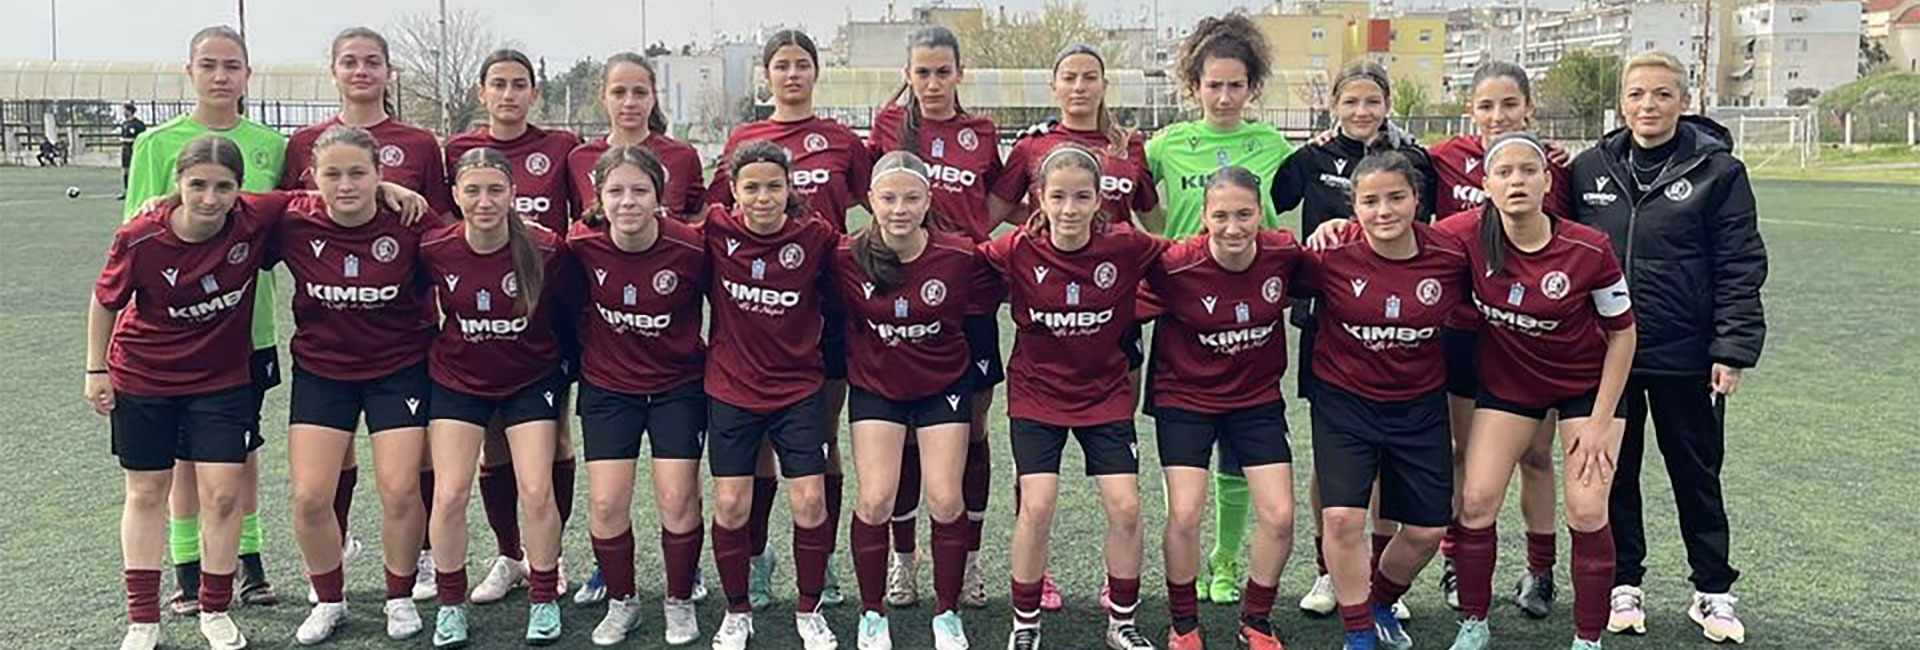 ΕΠΣ Μακεδονίας - ΕΠΣ Σερρών      16-0 (Γυναικών Κ15)